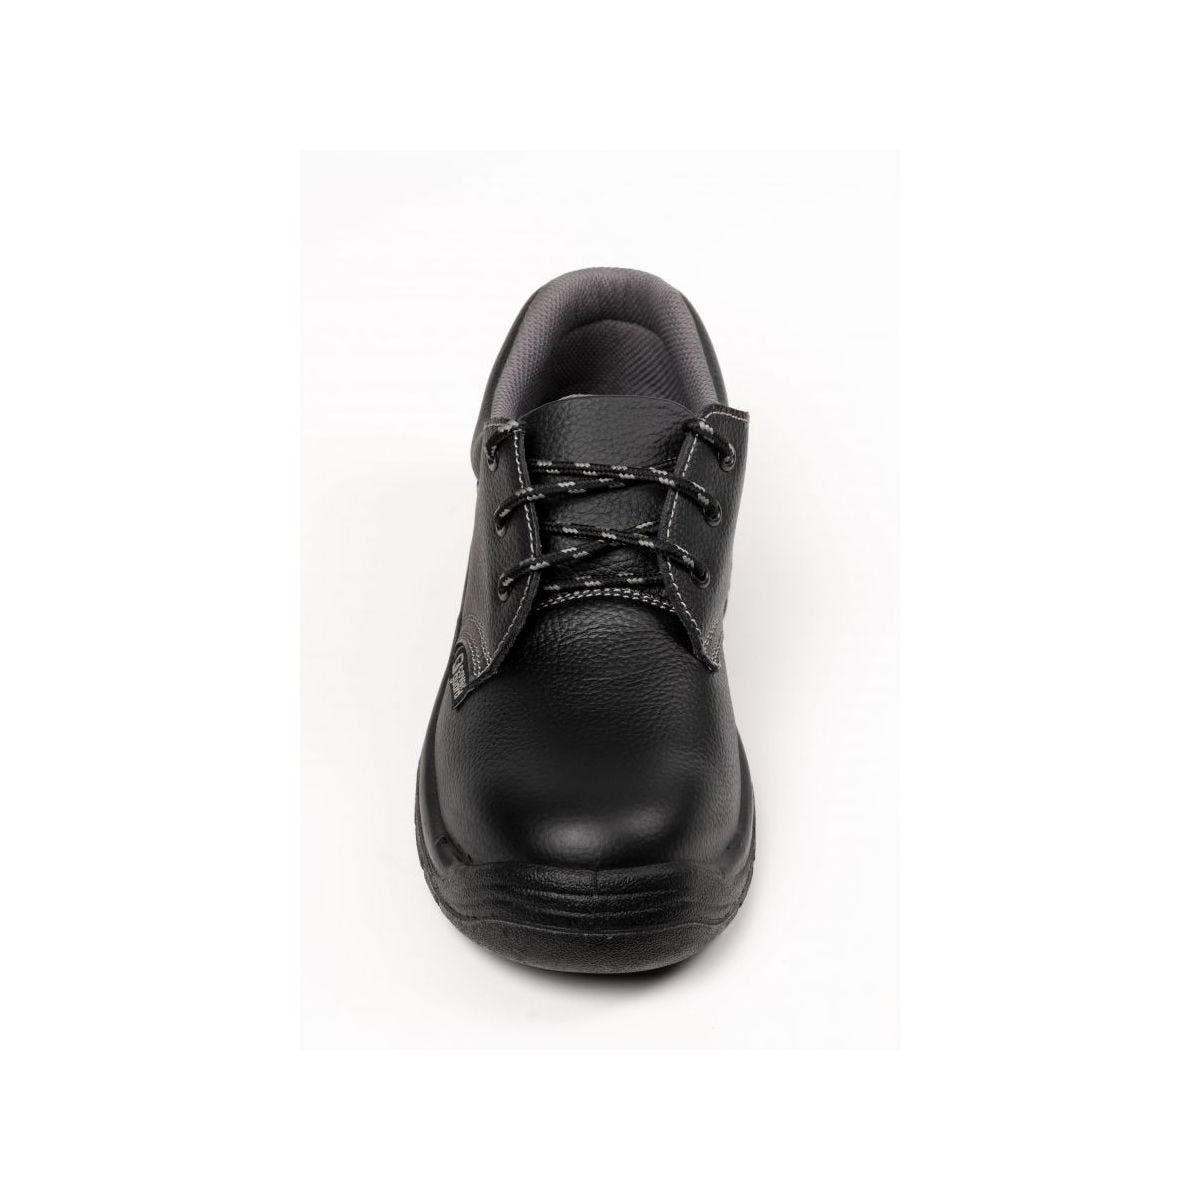 Chaussures de sécurité basses AGATE II S3 Noir - Coverguard - Taille 35 3